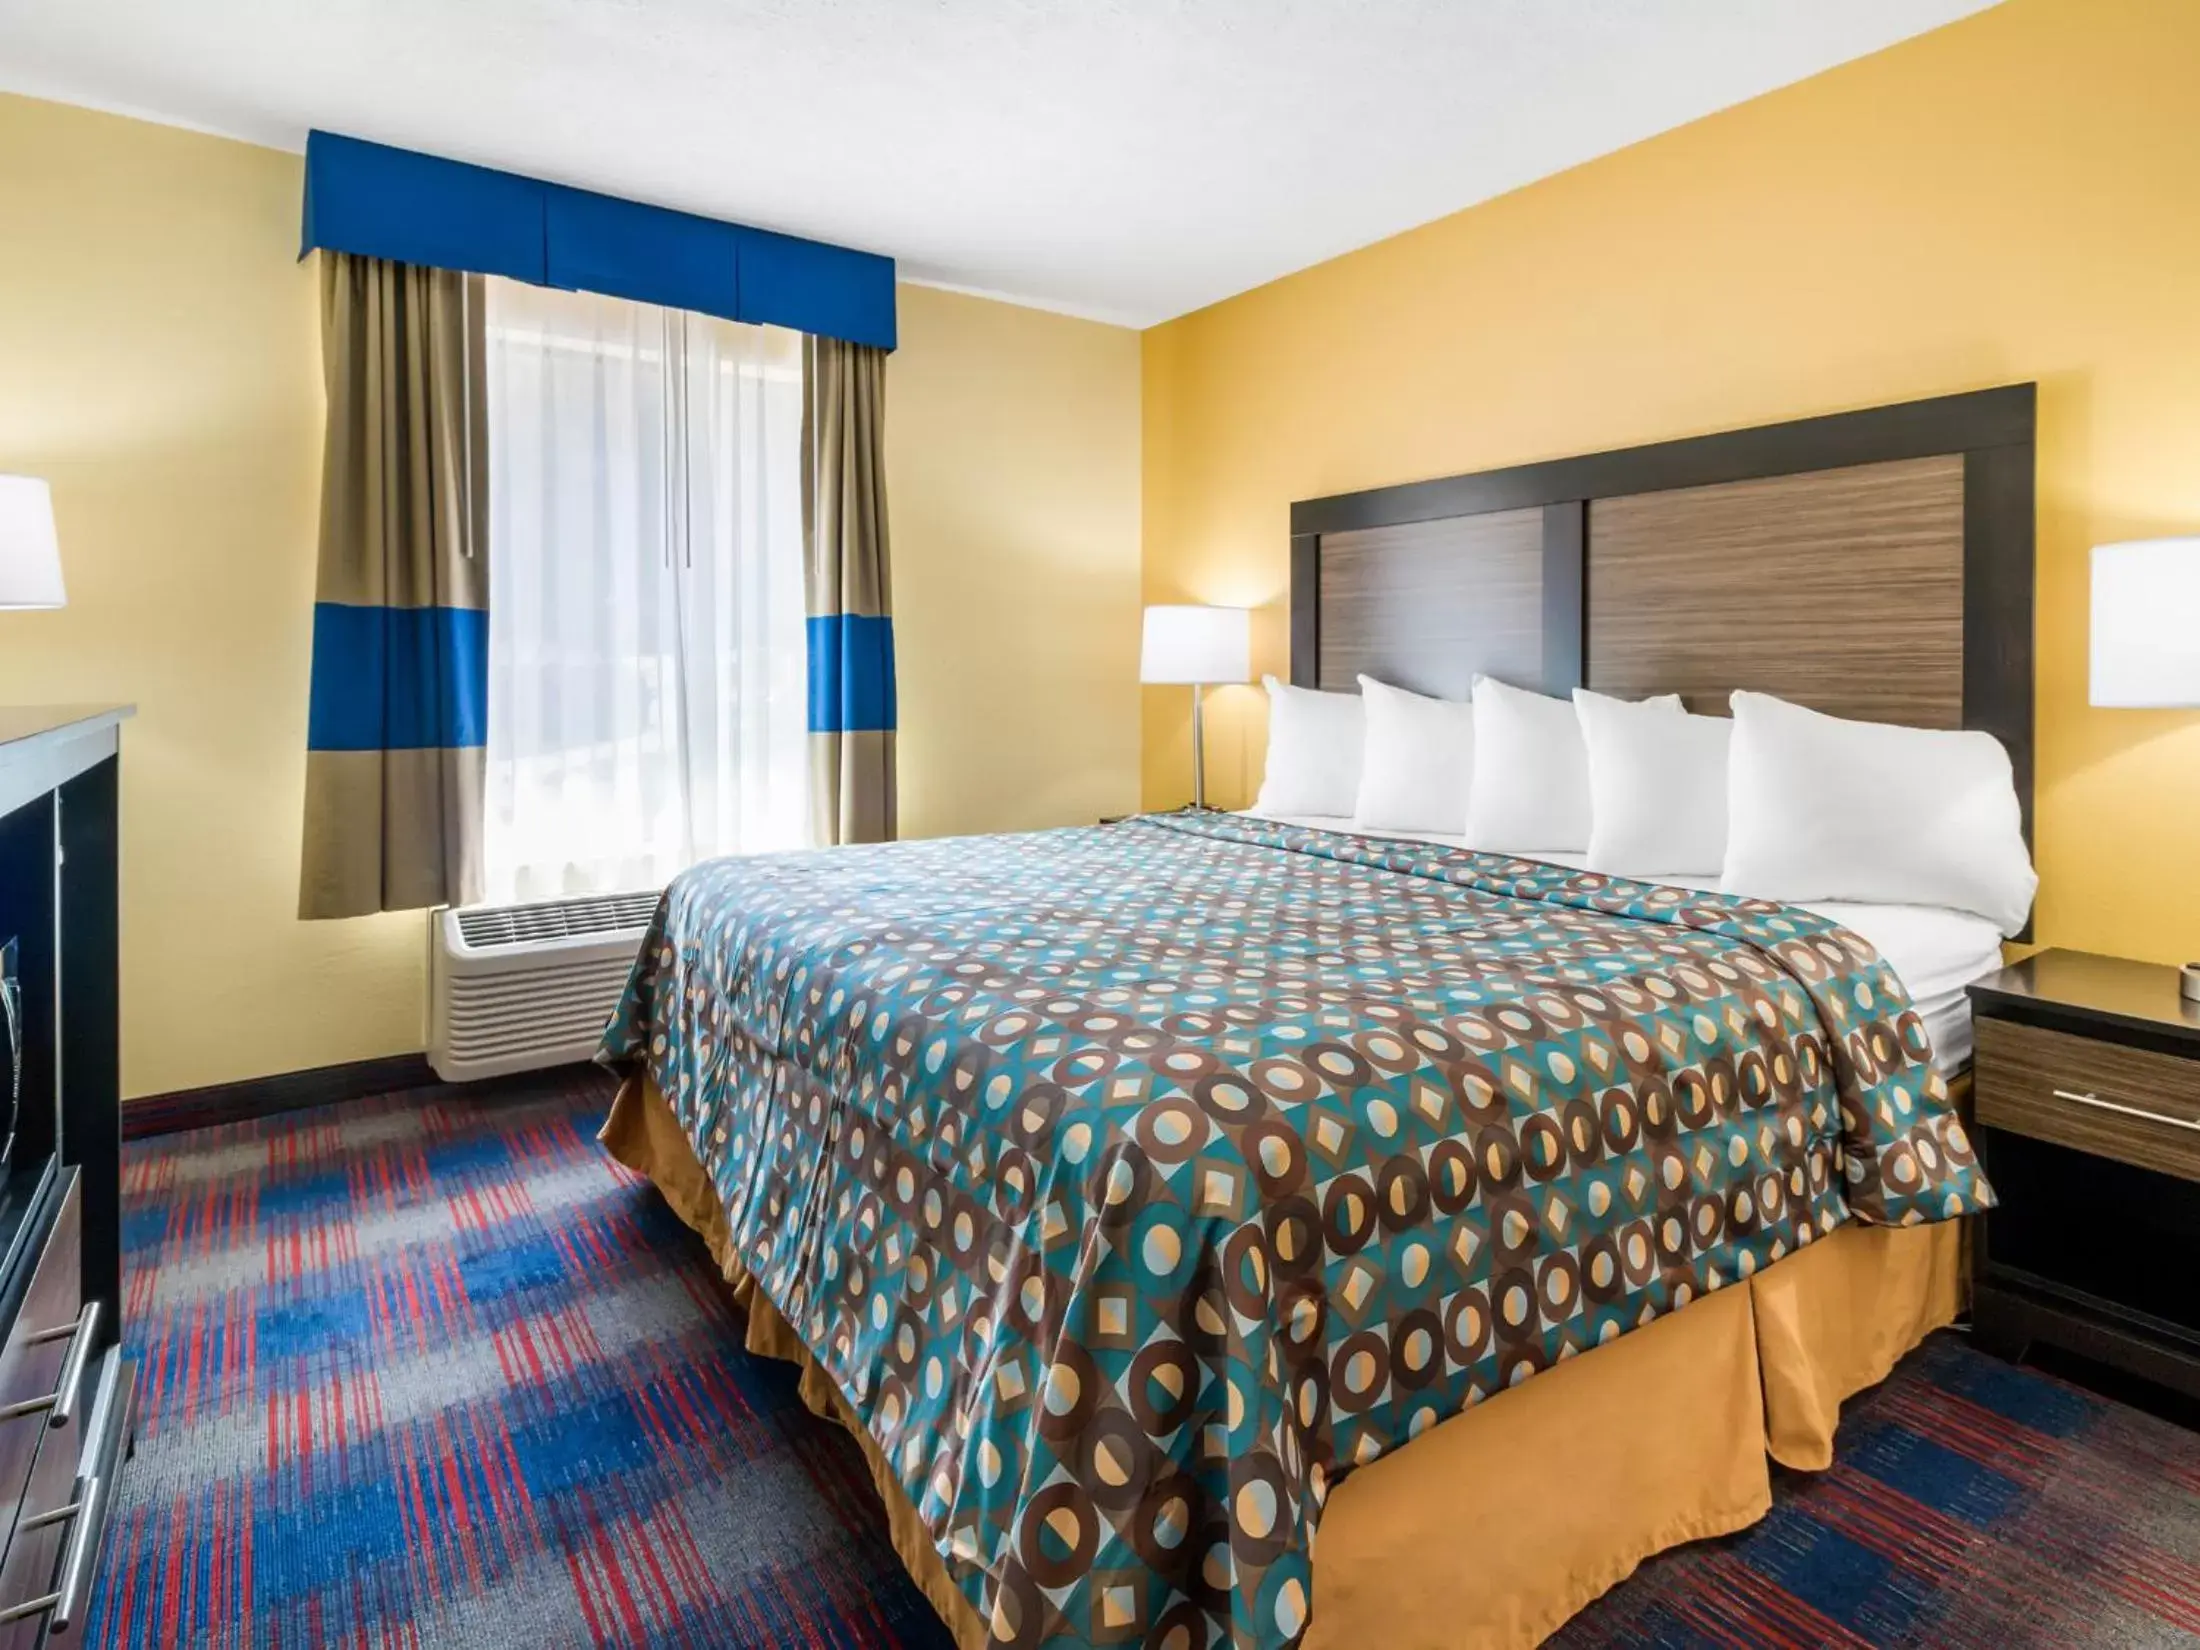 Bedroom, Bed in Americas Best Value Inn - Clayton